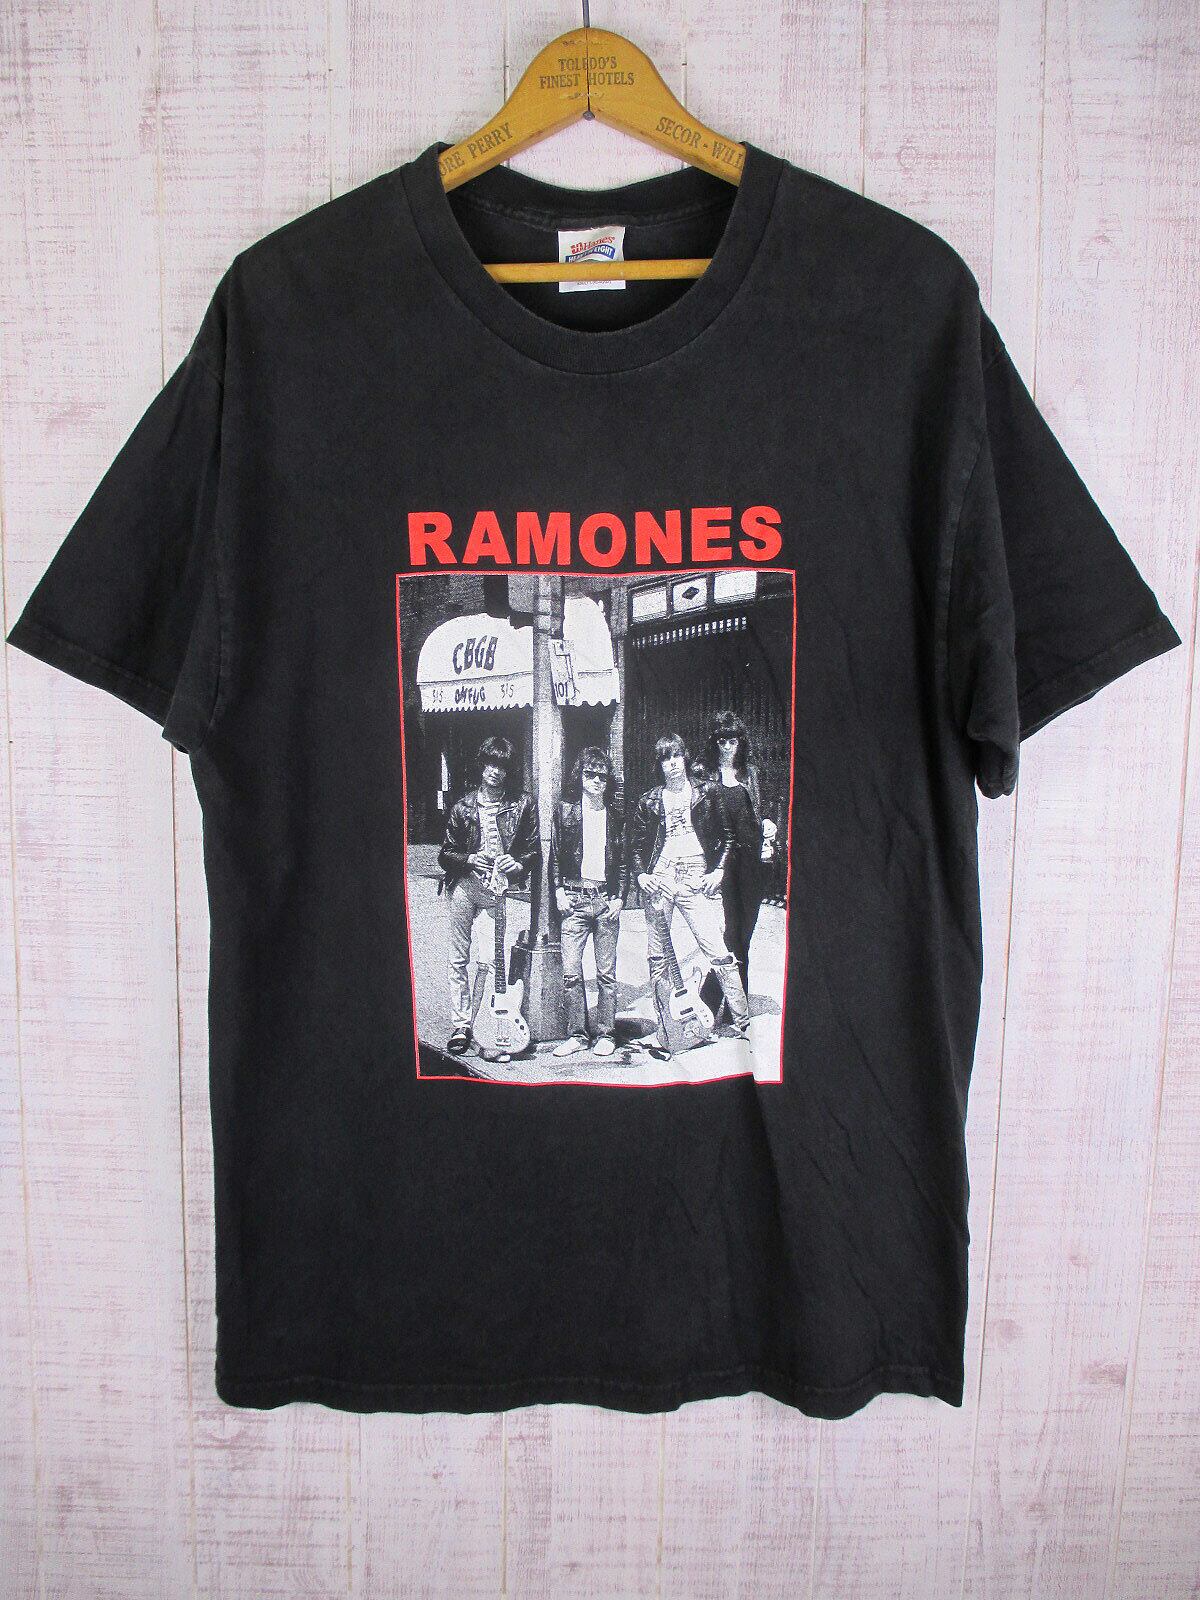 Vintage Rock Item ロック アイテム 90s RAMONES ラモーンズの激情 クルーネック 半袖 Tシャツ Hanesボディ ブラック 黒 L 90年代  トップス カットソー バンドT ロックT アーティストT 【メンズ】